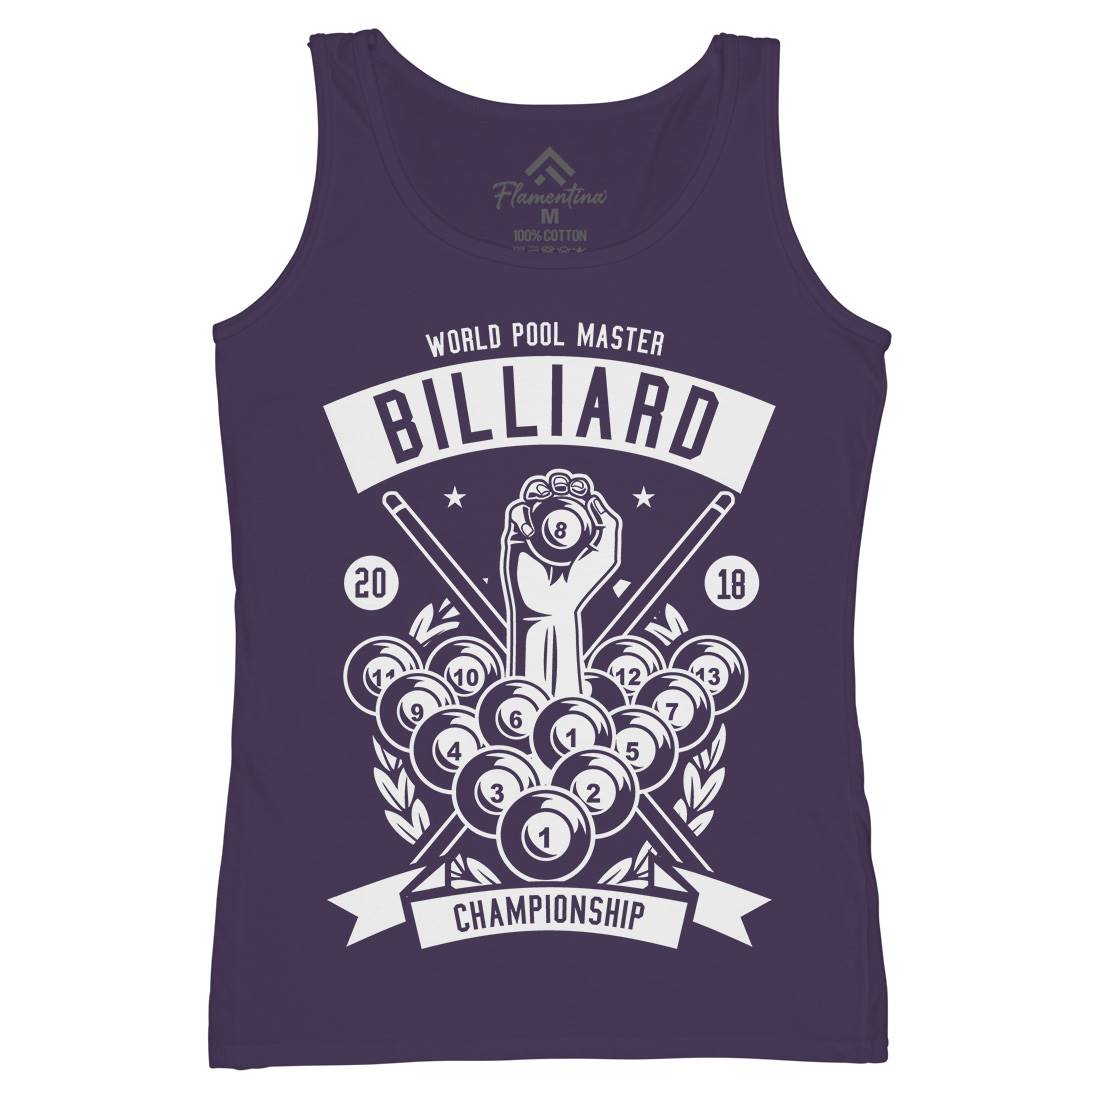 Billiard Championship Womens Organic Tank Top Vest Sport B499